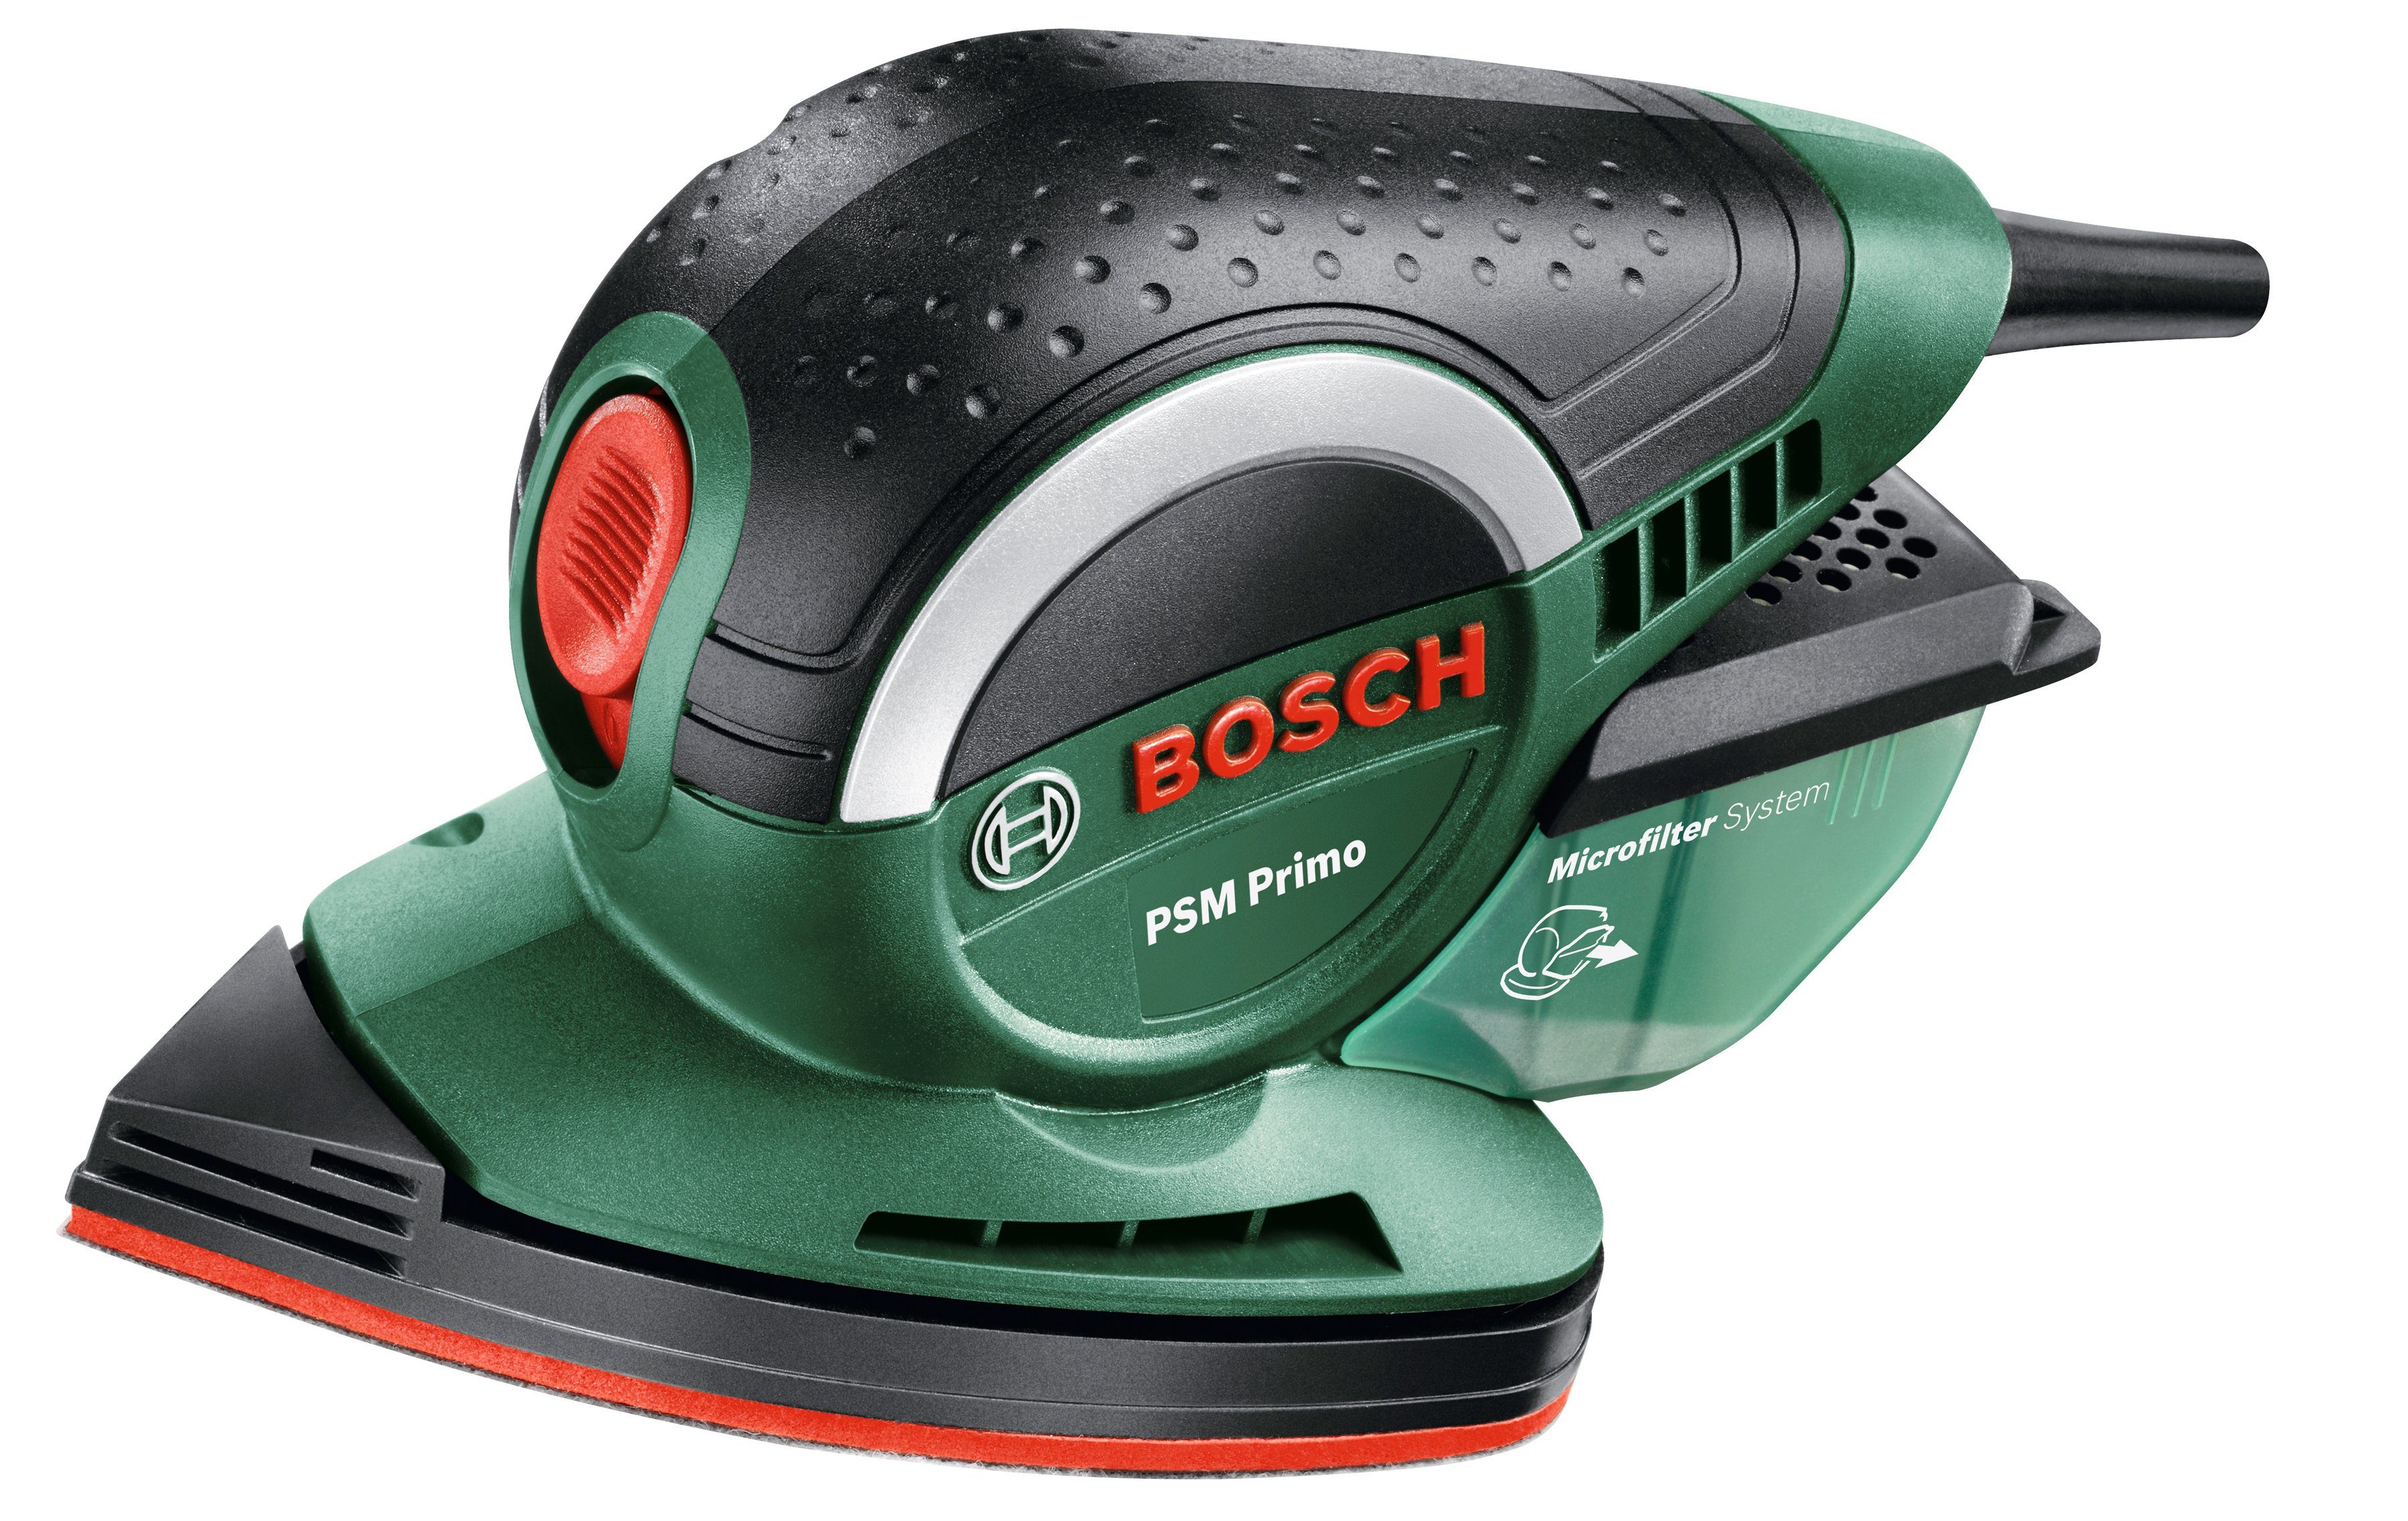 Bosch Home & Garden Multischleifer PSM Primo, 24000 U/min | Multischleifer